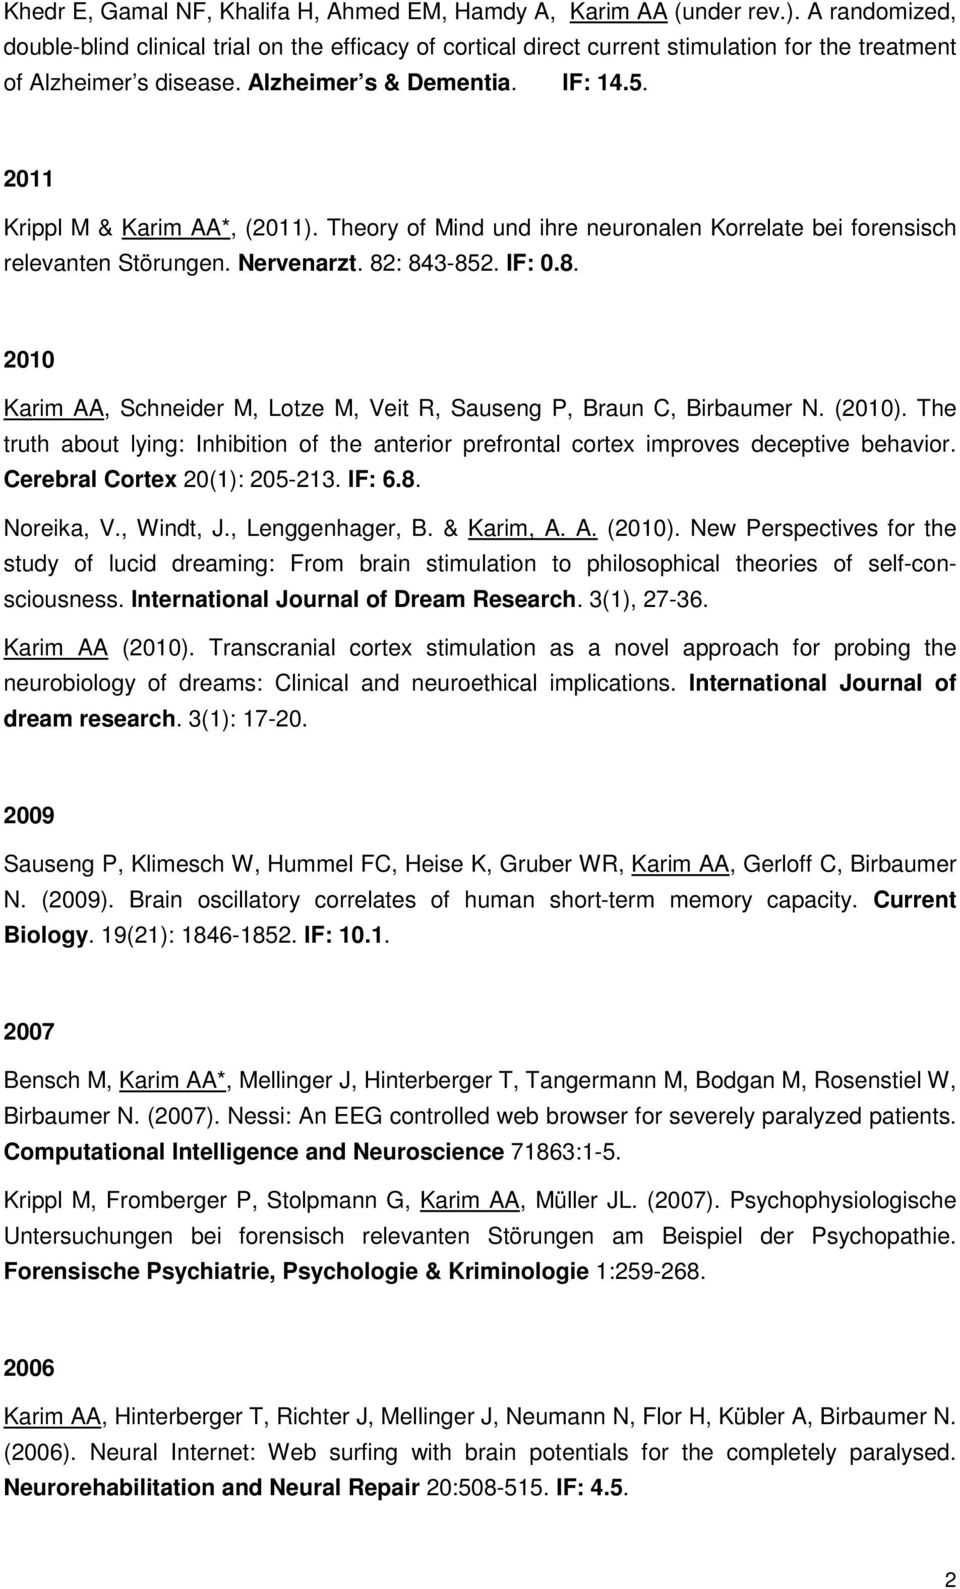 2011 Krippl M & Karim AA*, (2011). Theory of Mind und ihre neuronalen Korrelate bei forensisch relevanten Störungen. Nervenarzt. 82